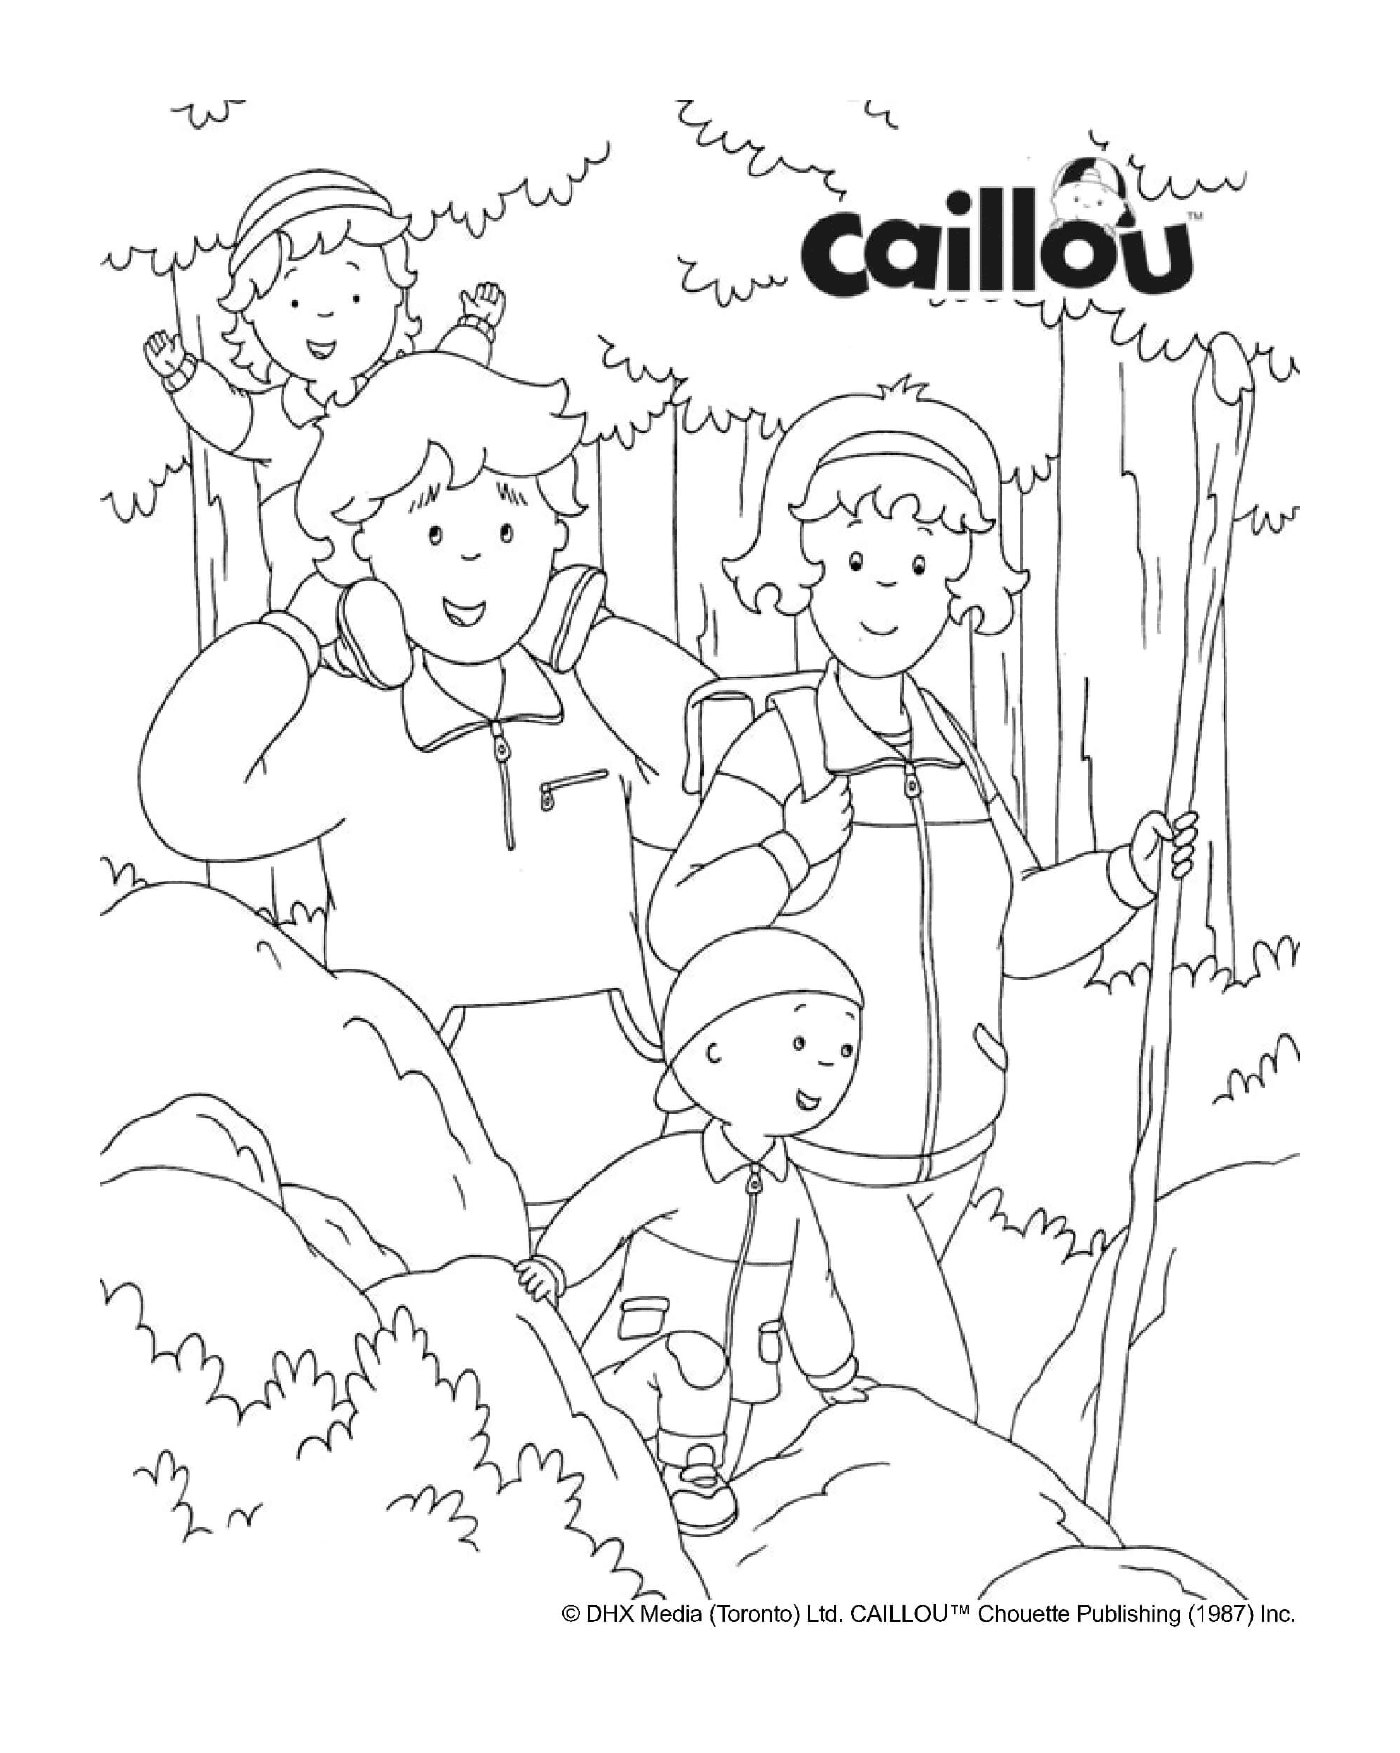  Un'escursione autunnale in famiglia con Caillou 